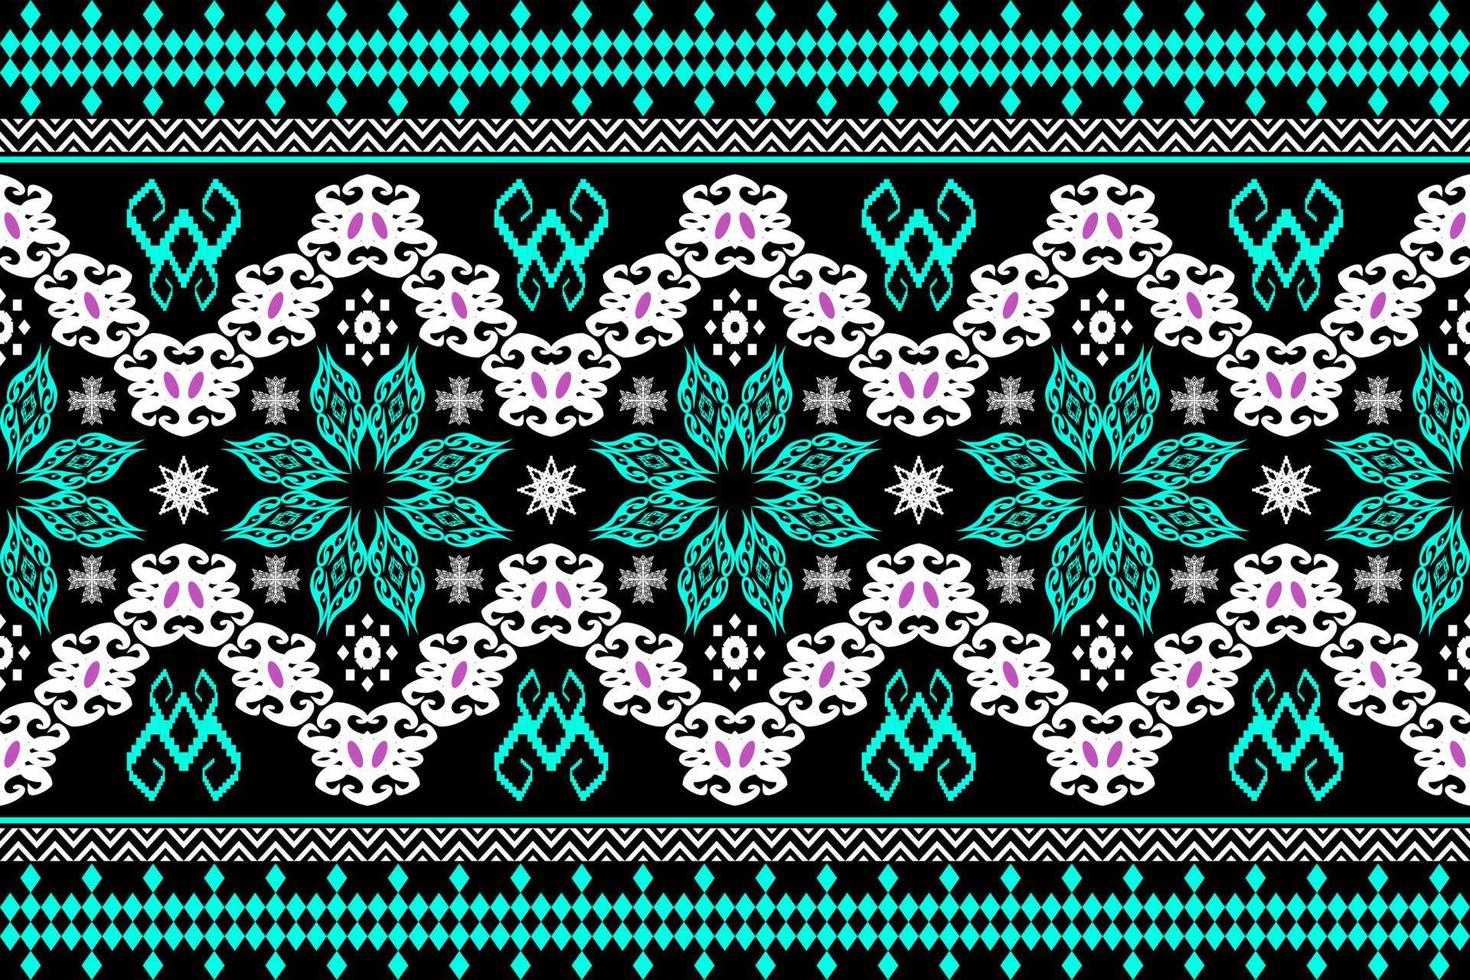 geometrische etnische oosterse traditionele pattern.figure tribal borduurwerk style.design voor achtergrond, behang, kleding, verpakking, stof, vectorillustratie vector